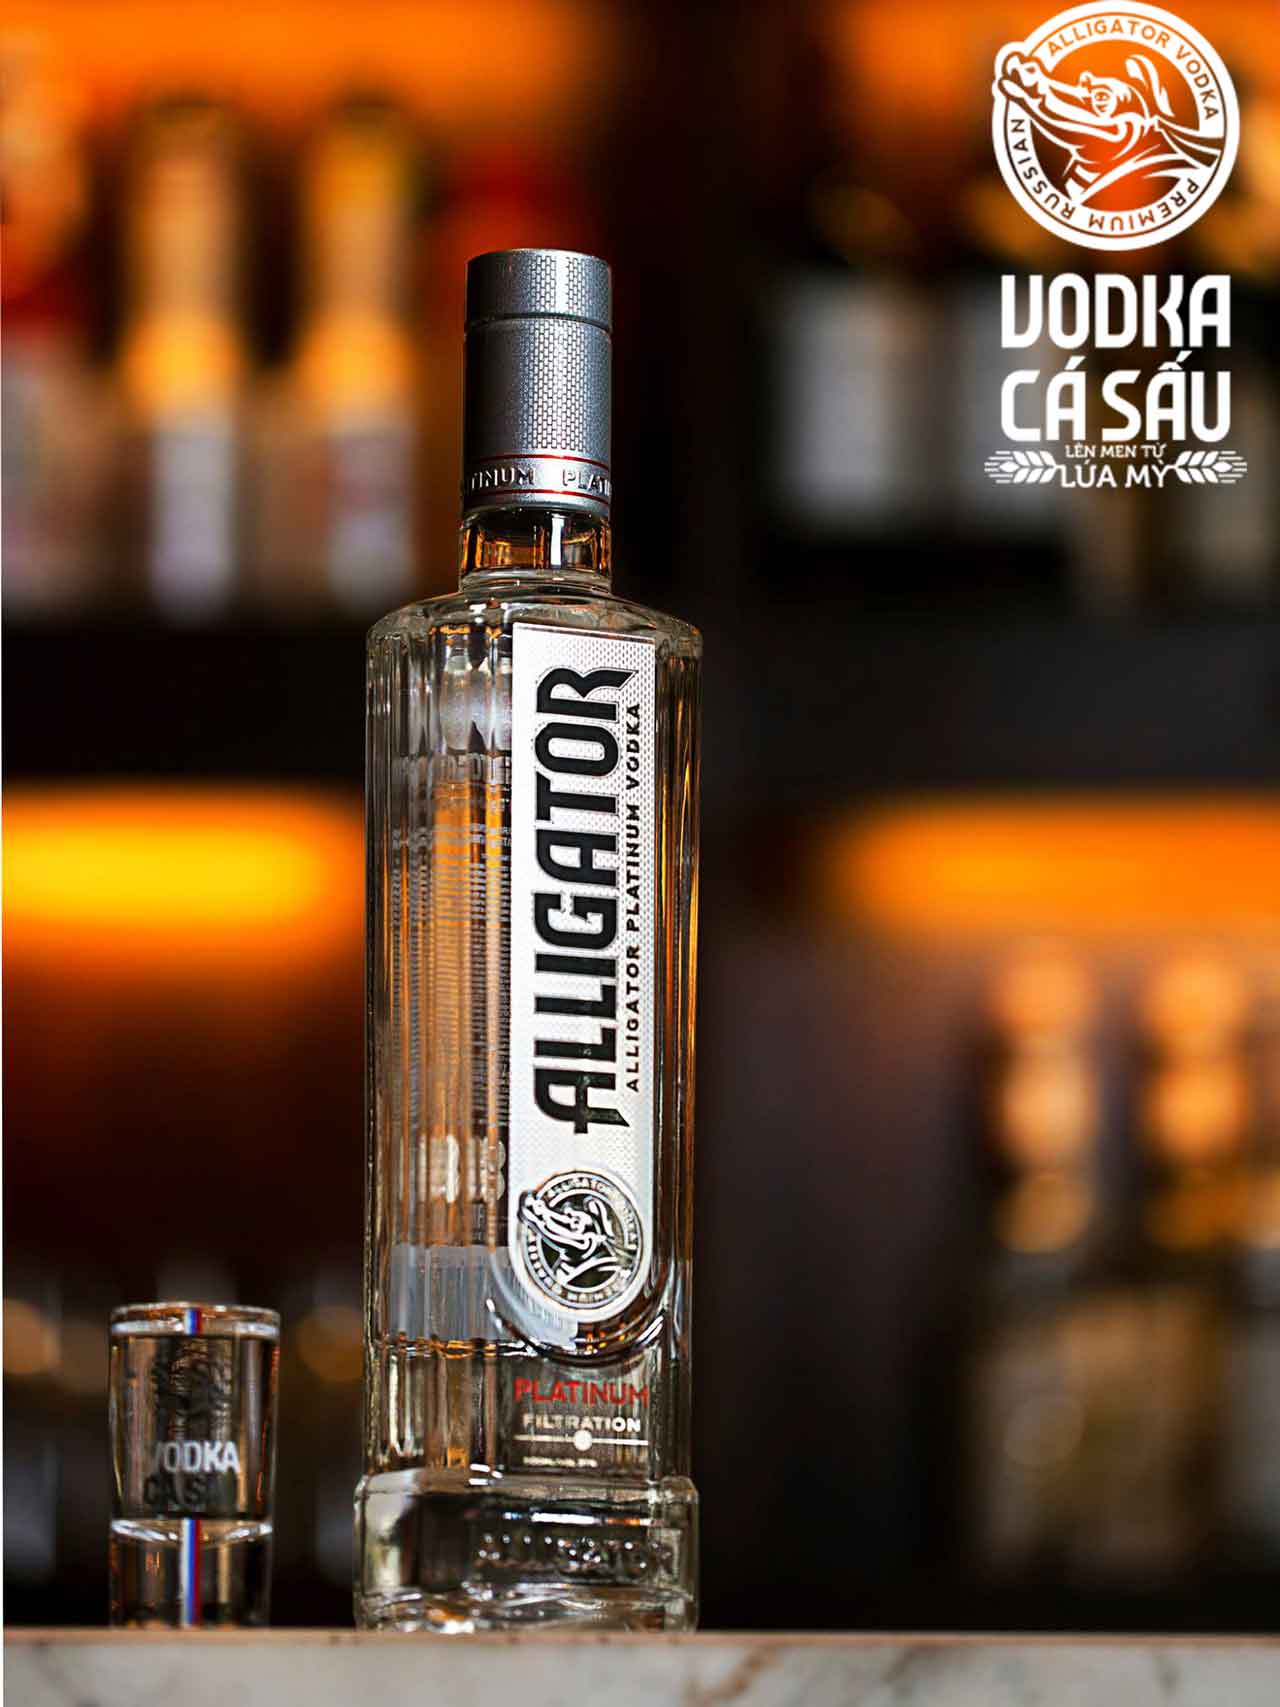 Diện mạo mới từ năm 2017 của rượu Vodka cá sấu đen 